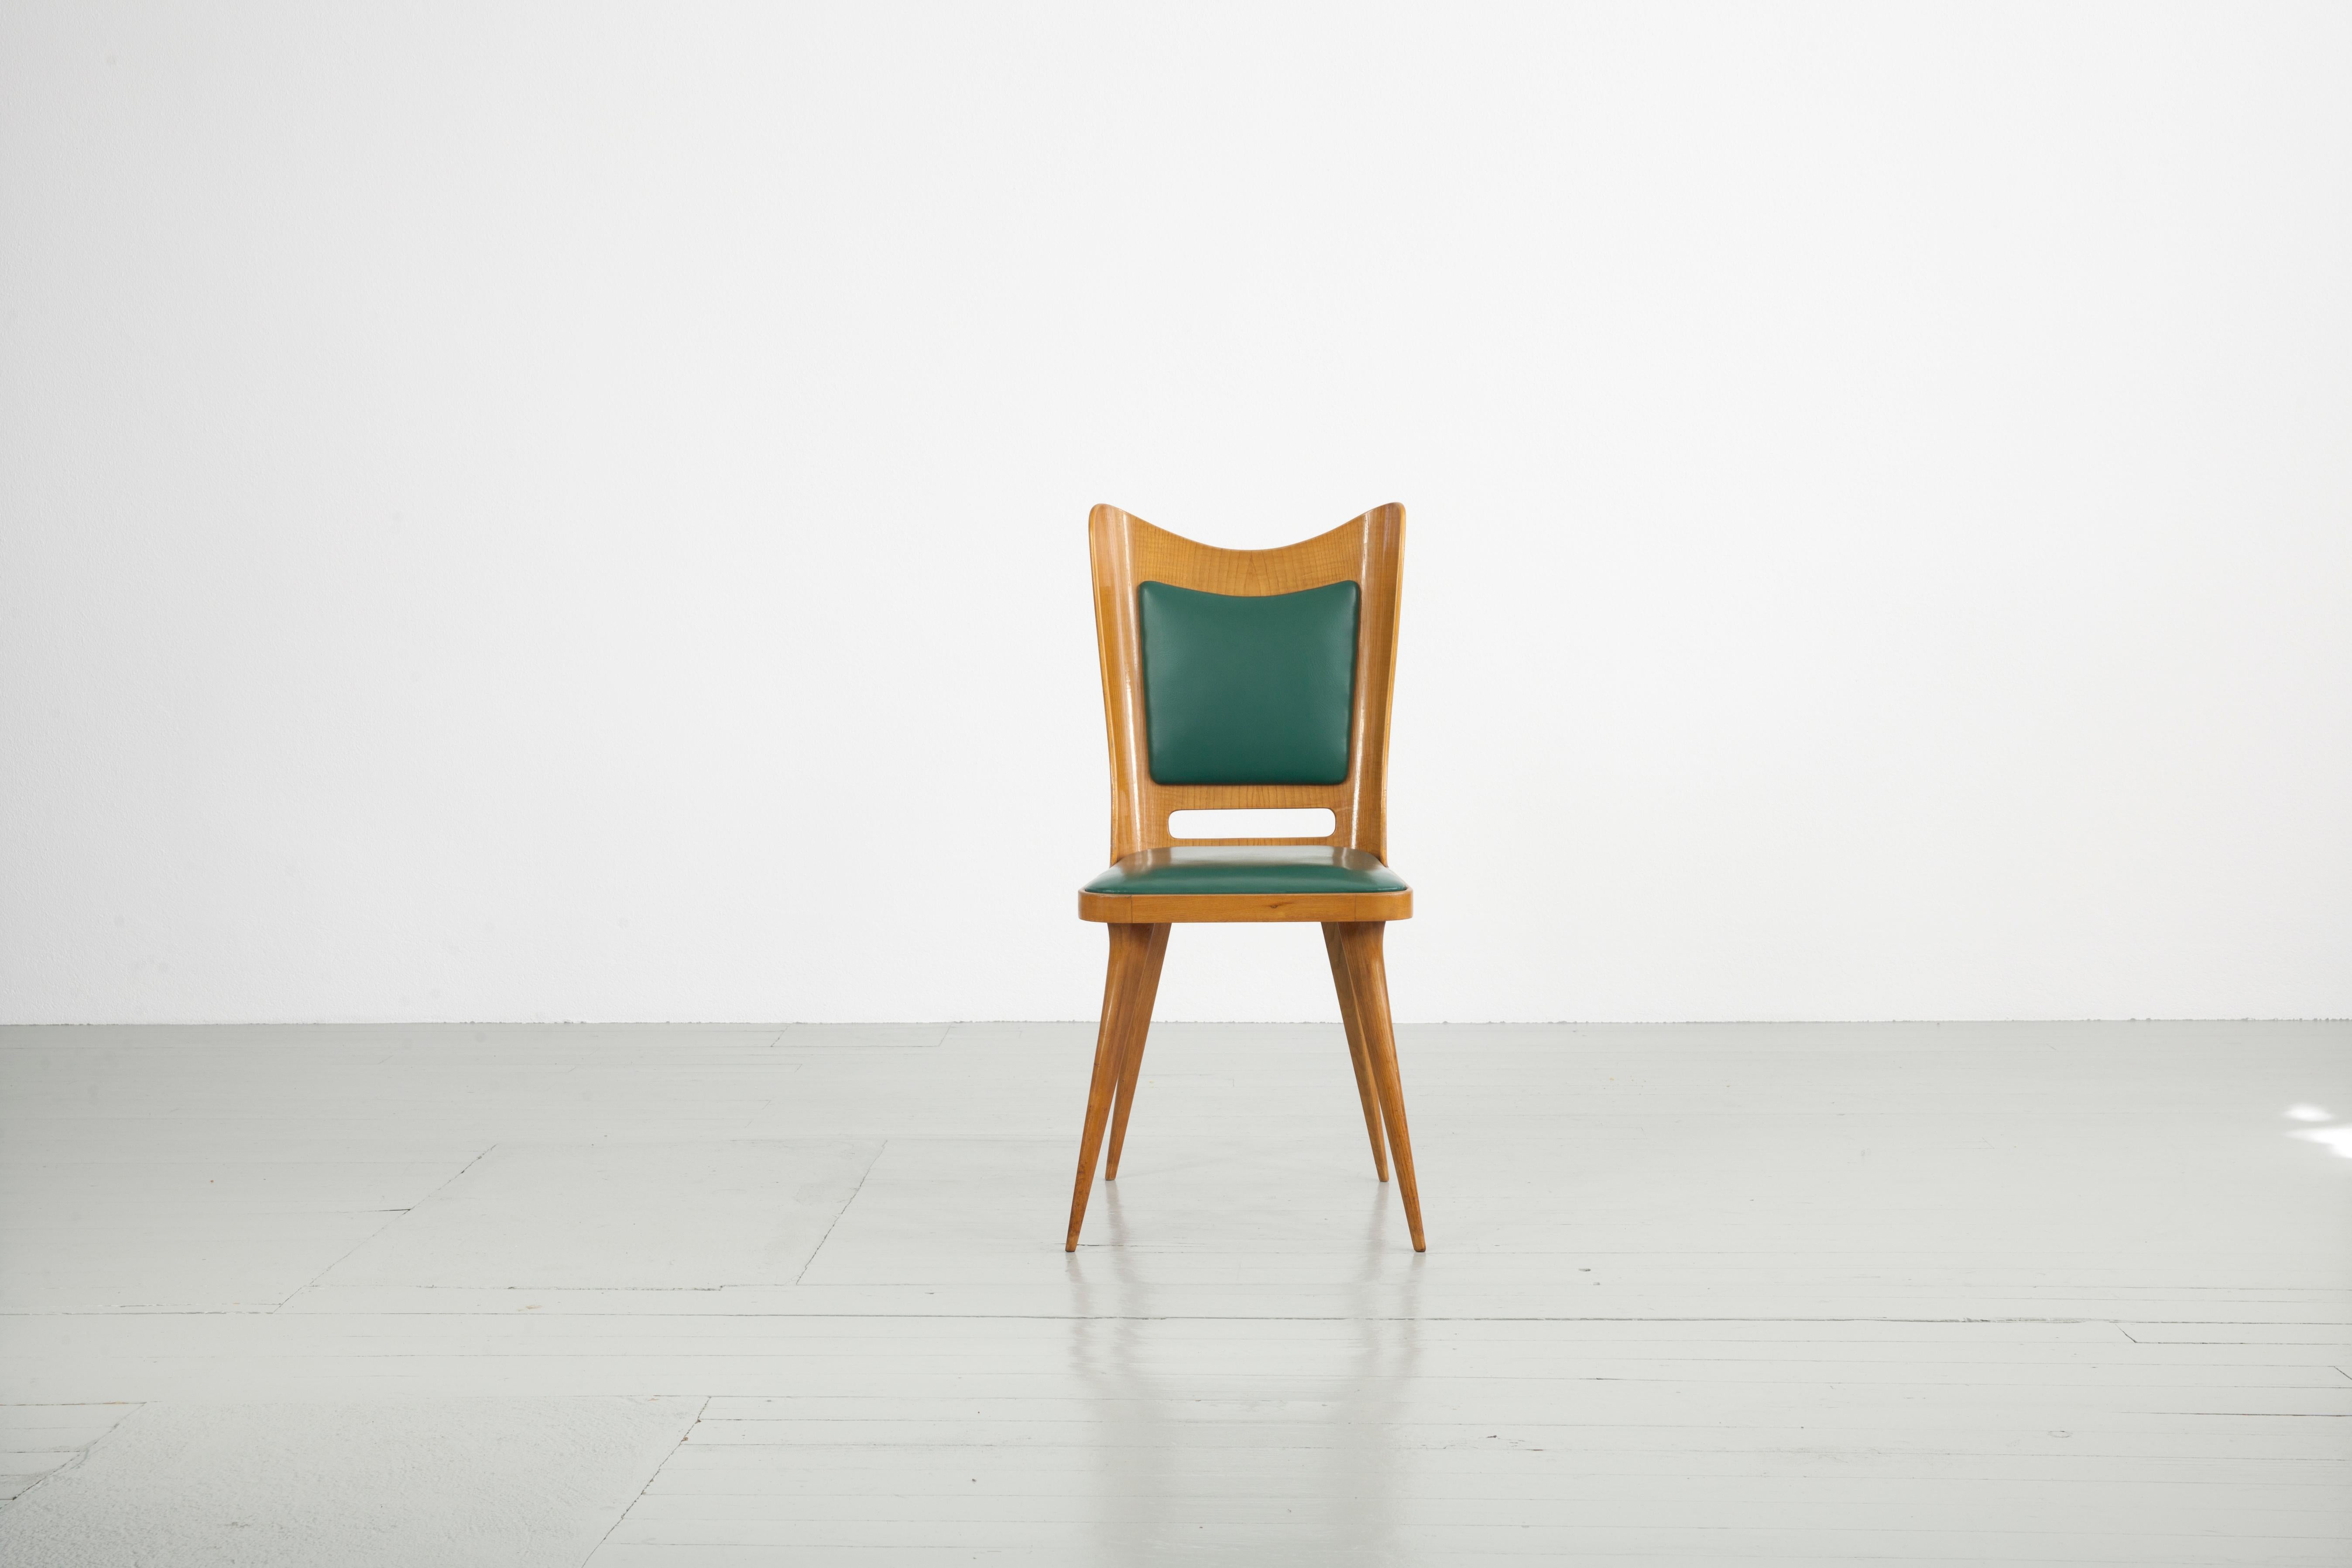 Cet ensemble de six chaises de salle à manger a été conçu par Carlo Ratti en Italie dans les années 1950. Le bois clair contraste avec la tapisserie vintage vert foncé et la combinaison de couleurs donne aux chaises un aspect classe et élégant.